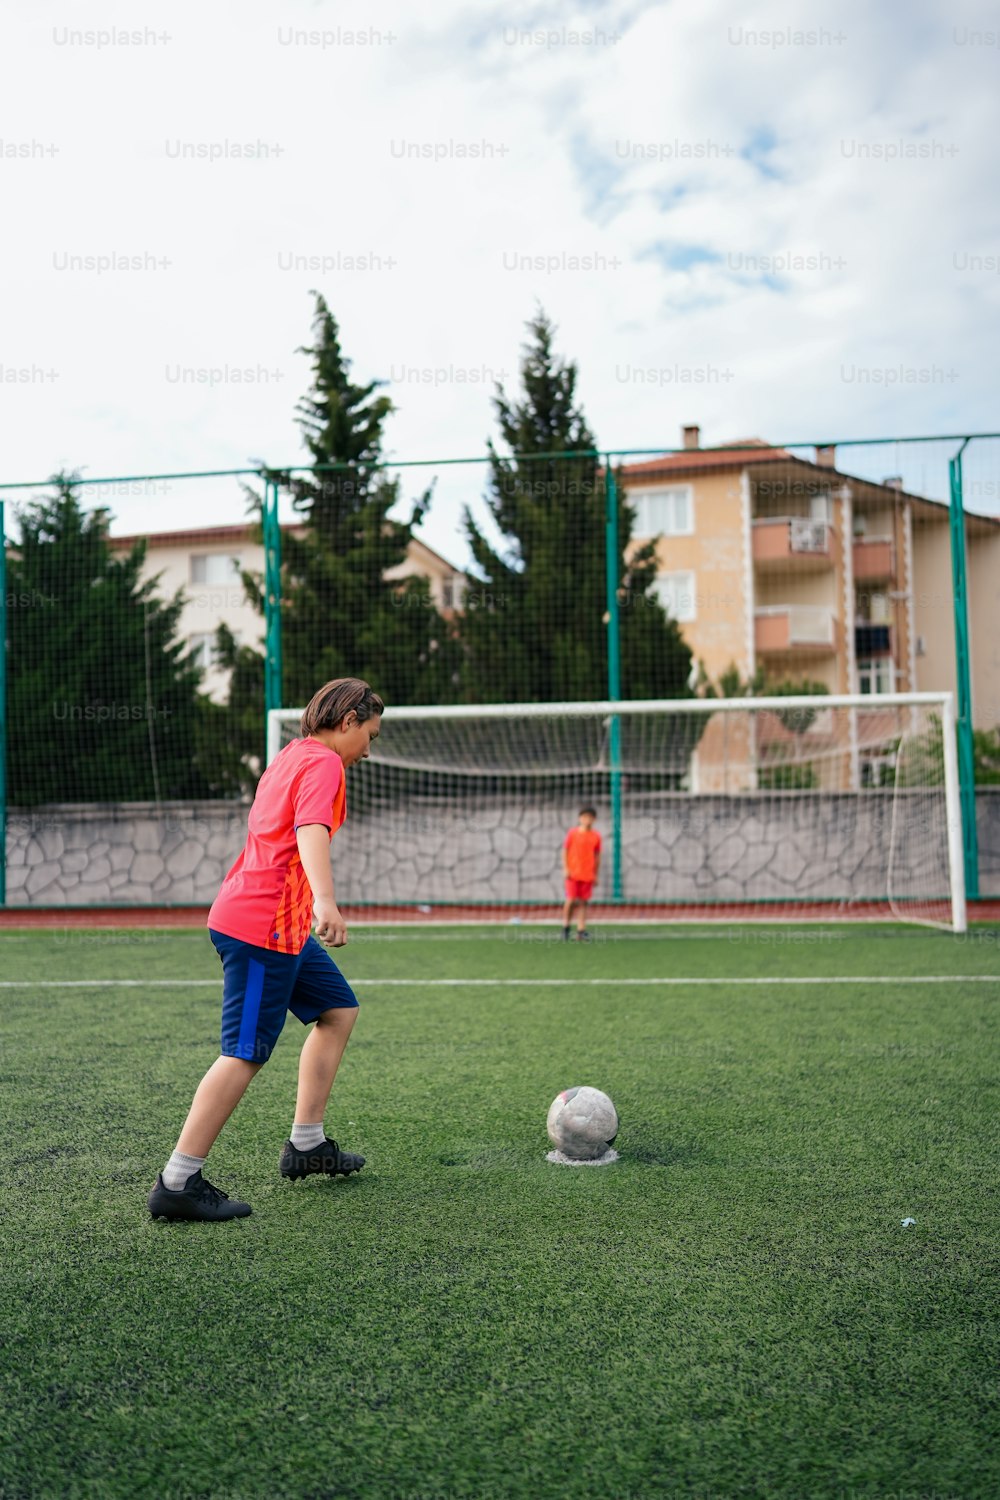 Ein kleiner Junge tritt gegen einen Fußball